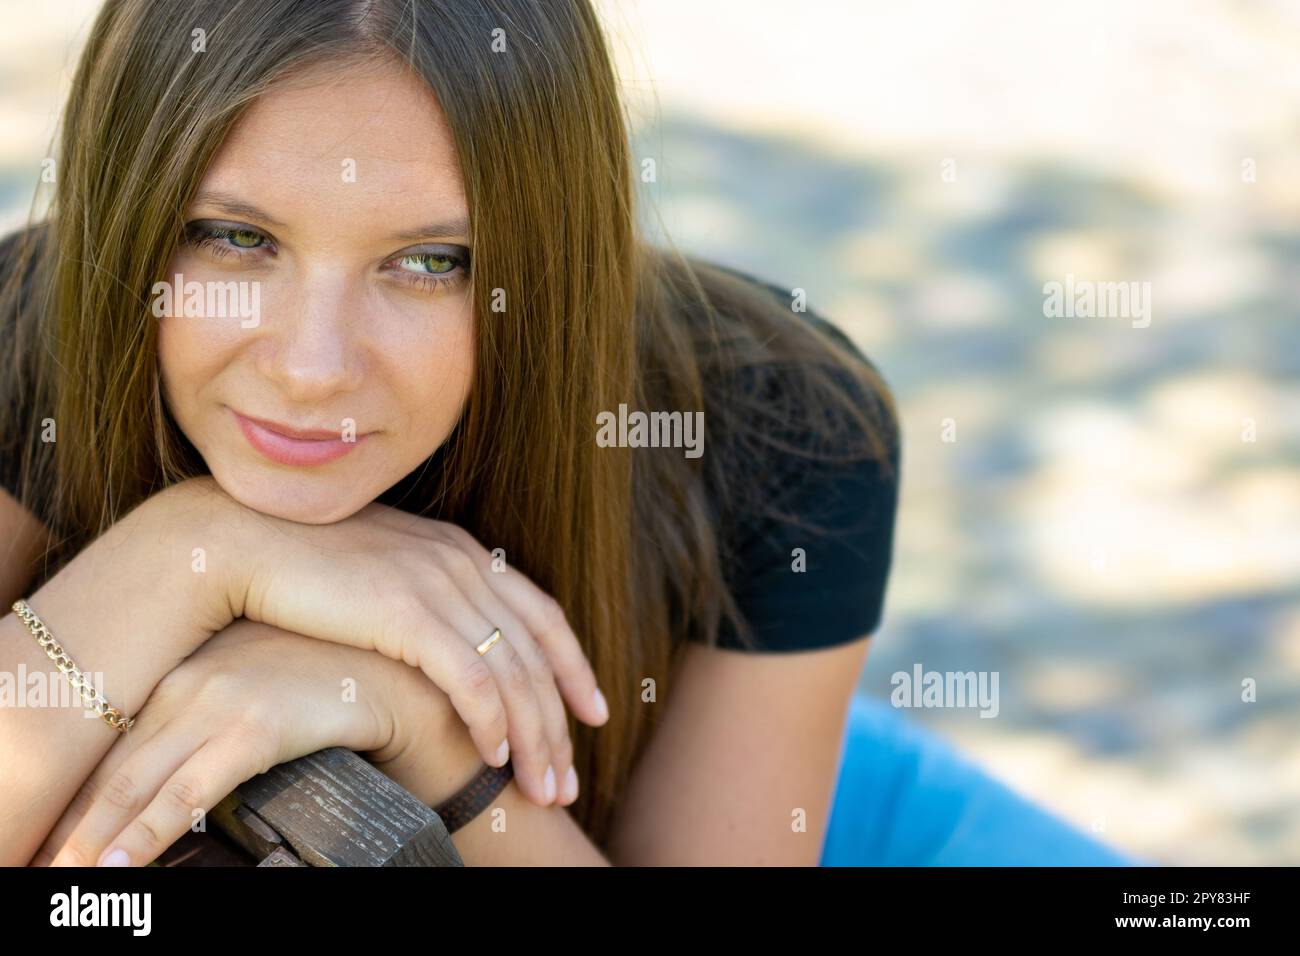 Nahaufnahme Porträt eines schönen Mädchen von slawischem Aussehen, hat das Mädchen einen nachdenklichen Blick Stockfoto